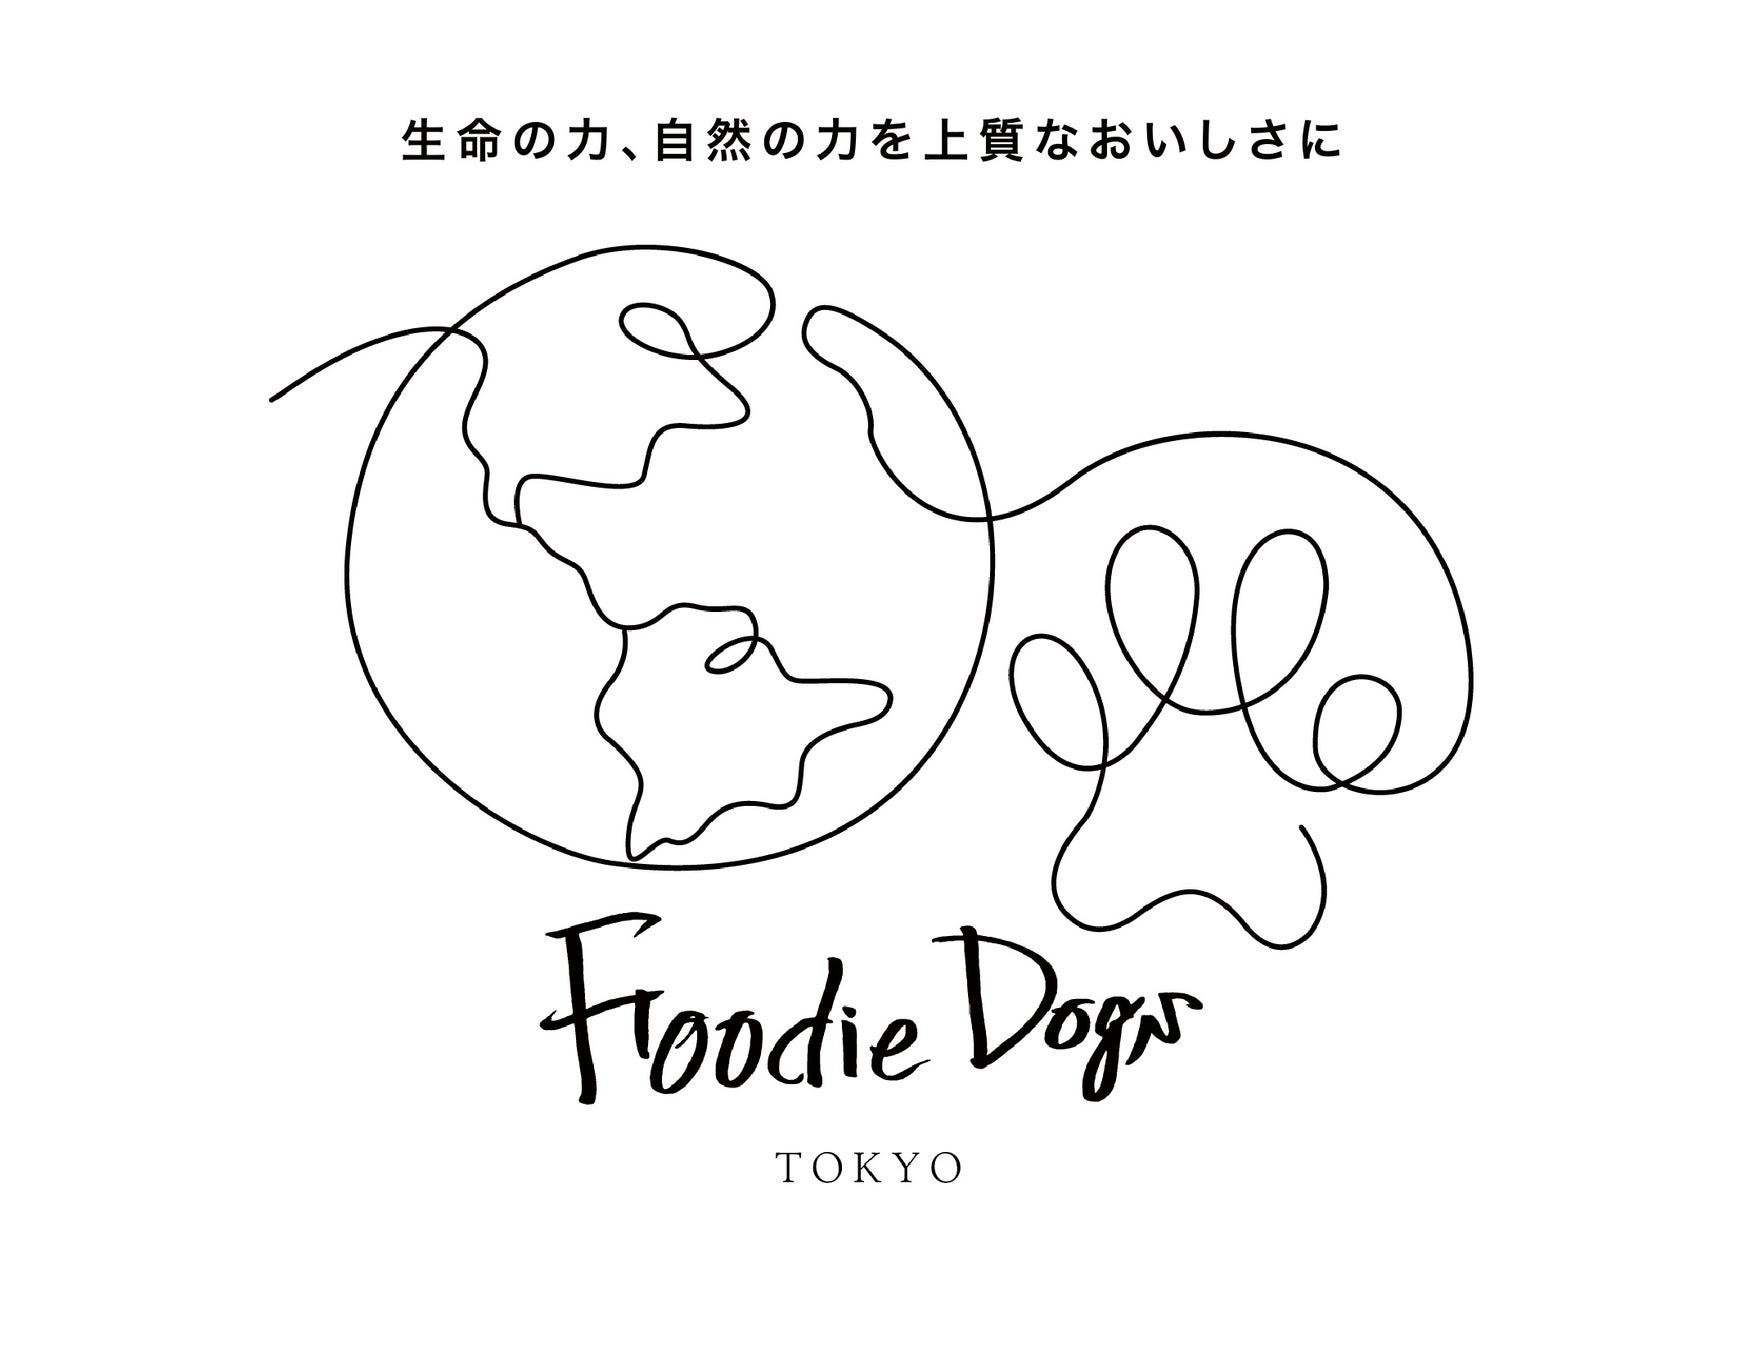 プレミアムドッグフードを展開するブランドFoodie Dogs TOKYO＿お刺身を作る過程で出る、切れ端をアップサイクルしたペットのおやつ「海のおやつシリーズ」の販売を開始のサブ画像9